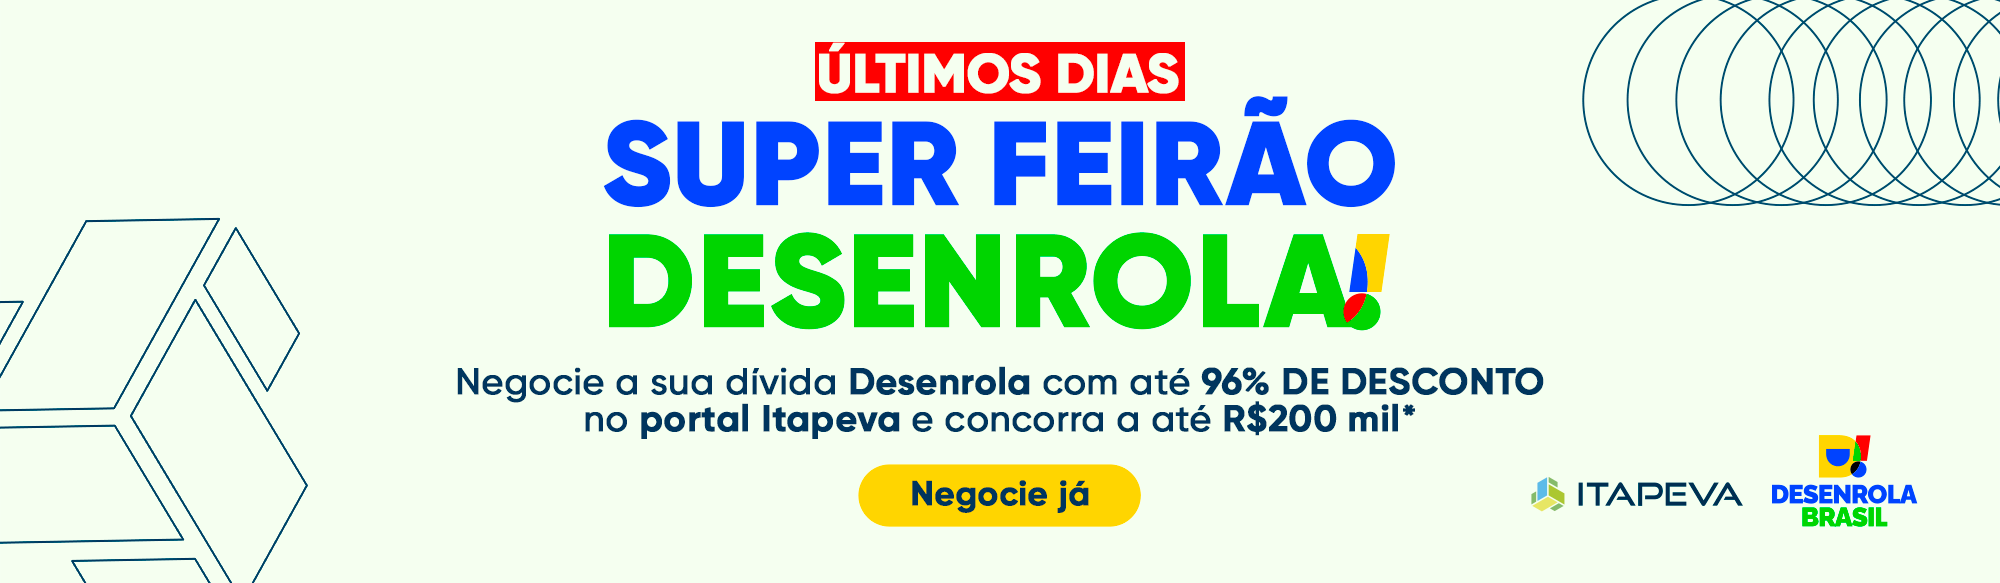 Último dias. Super Feirão Desenrola. Negocie sua dívida Desenrola com até 96% de desconto no portal Itapeva e concorra a R$200 mil. 